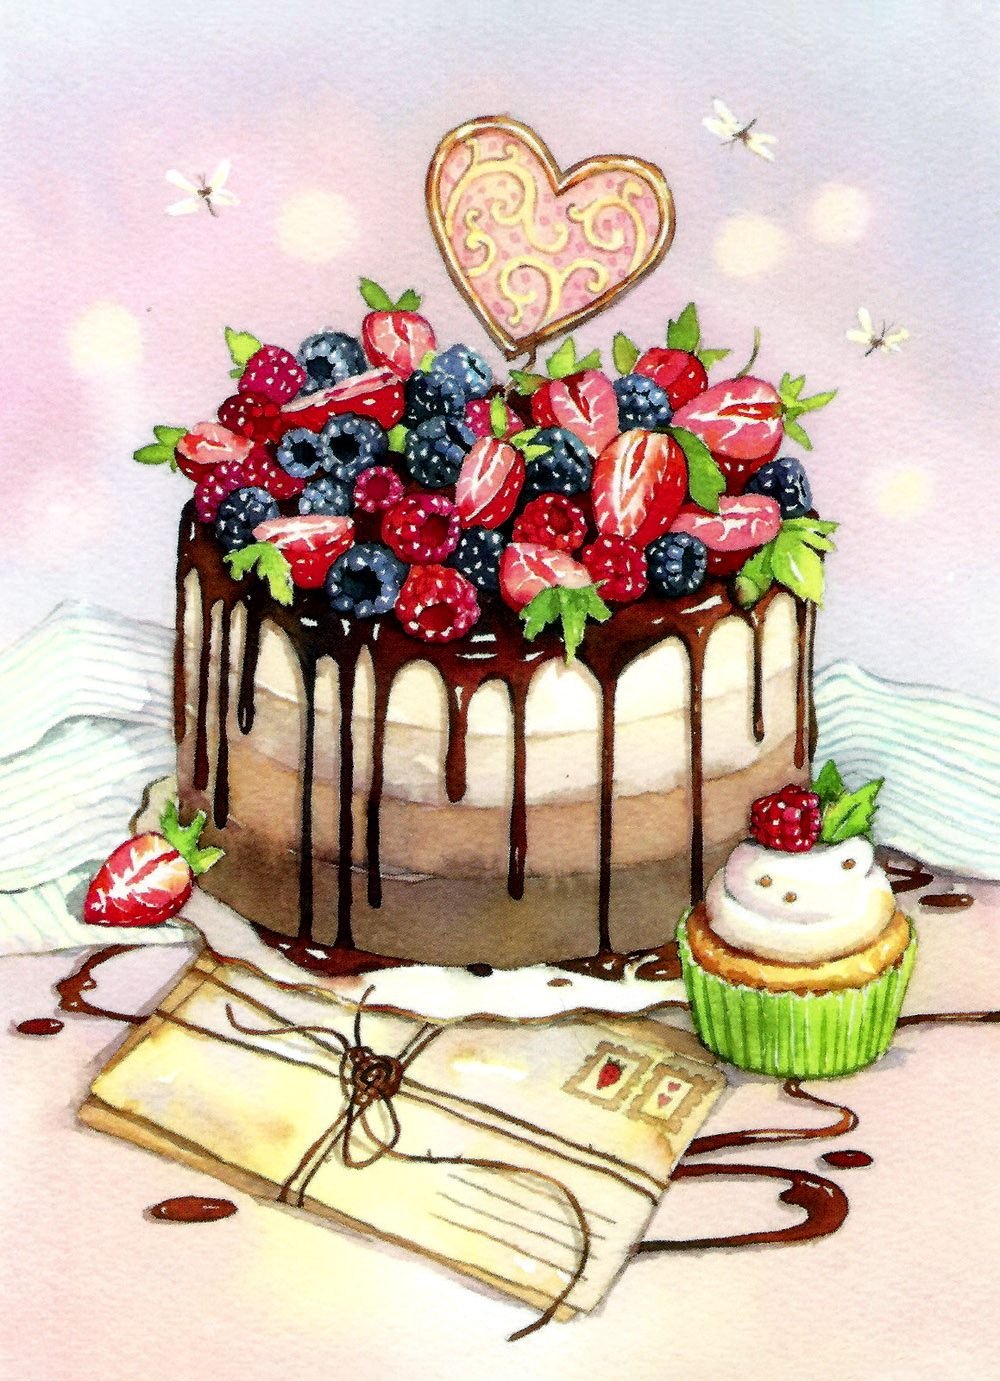 огромный торт с днем рождения картинки